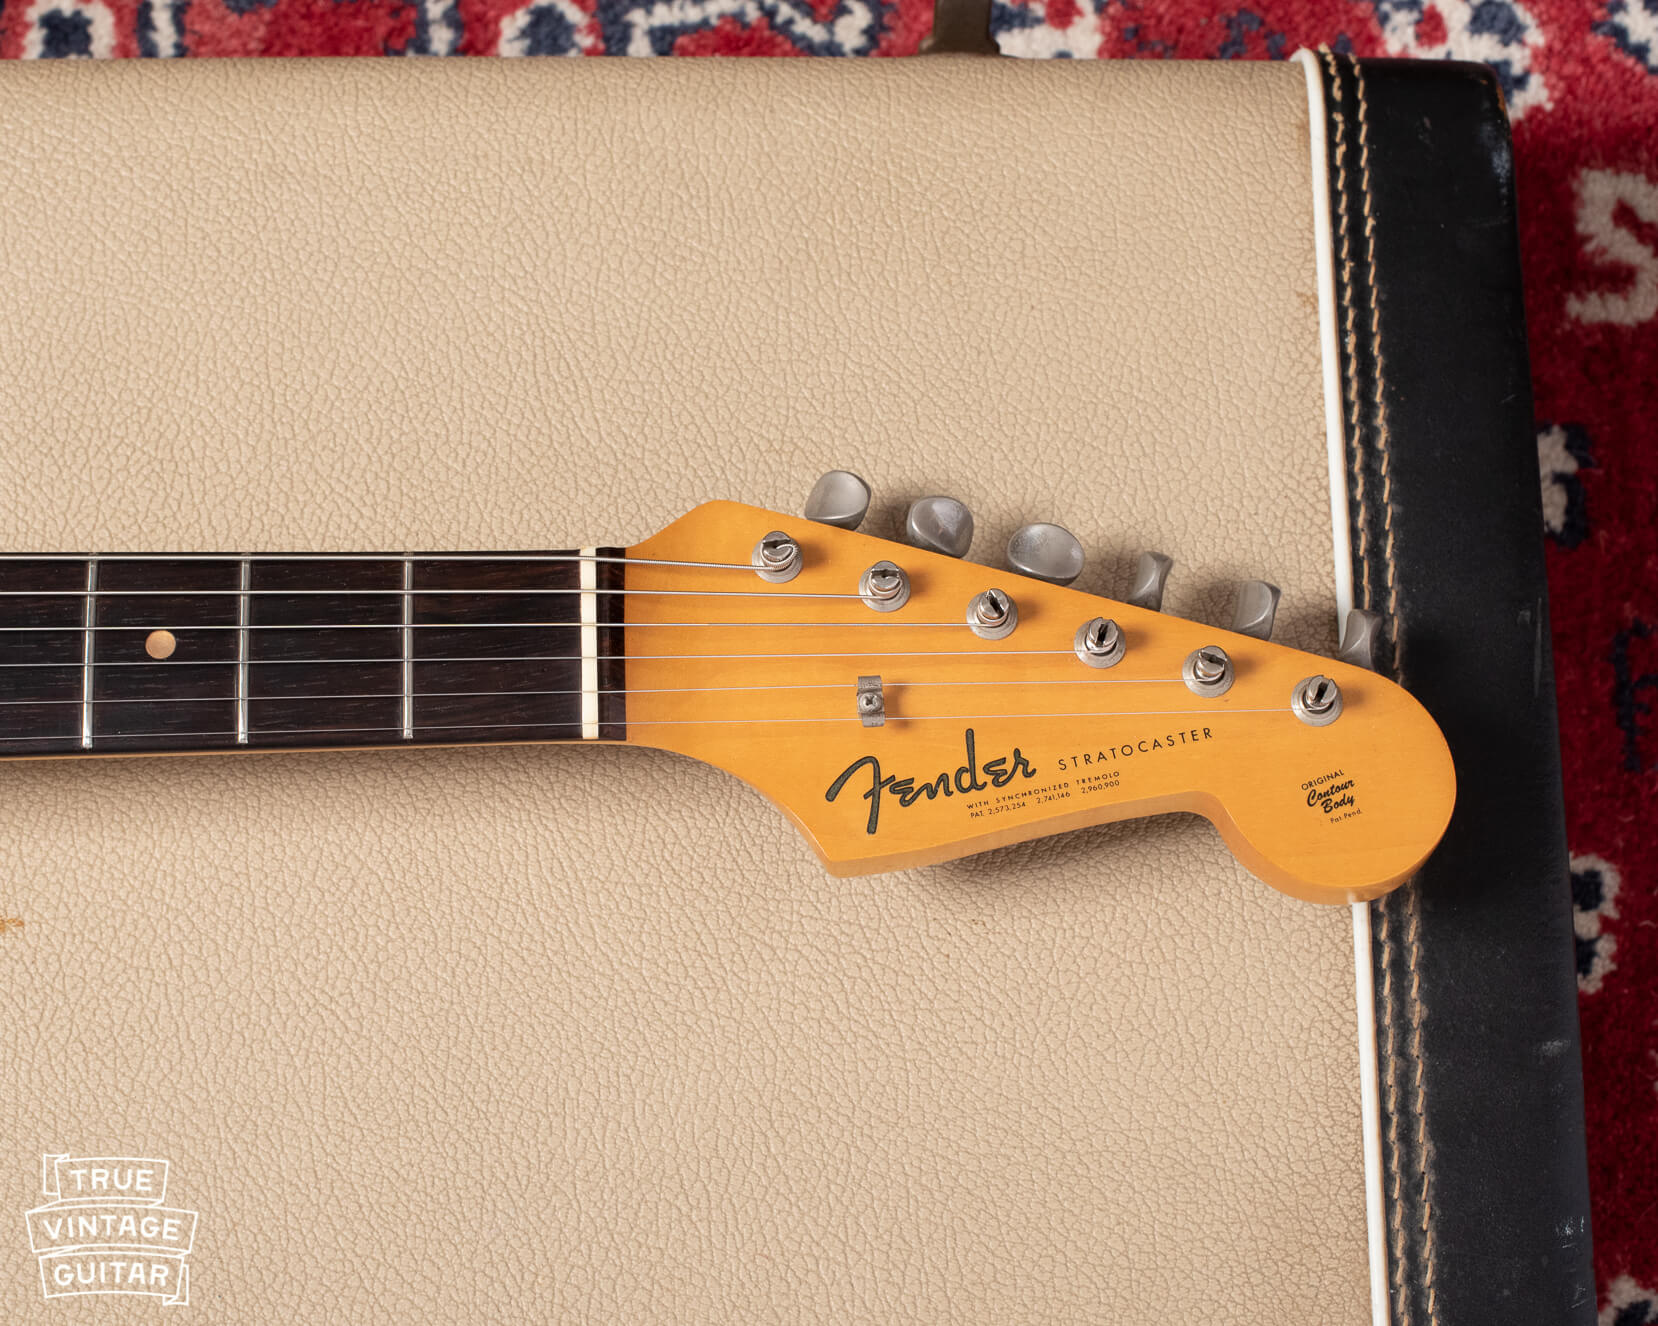 Vintage Fender Stratocaster guitar collector